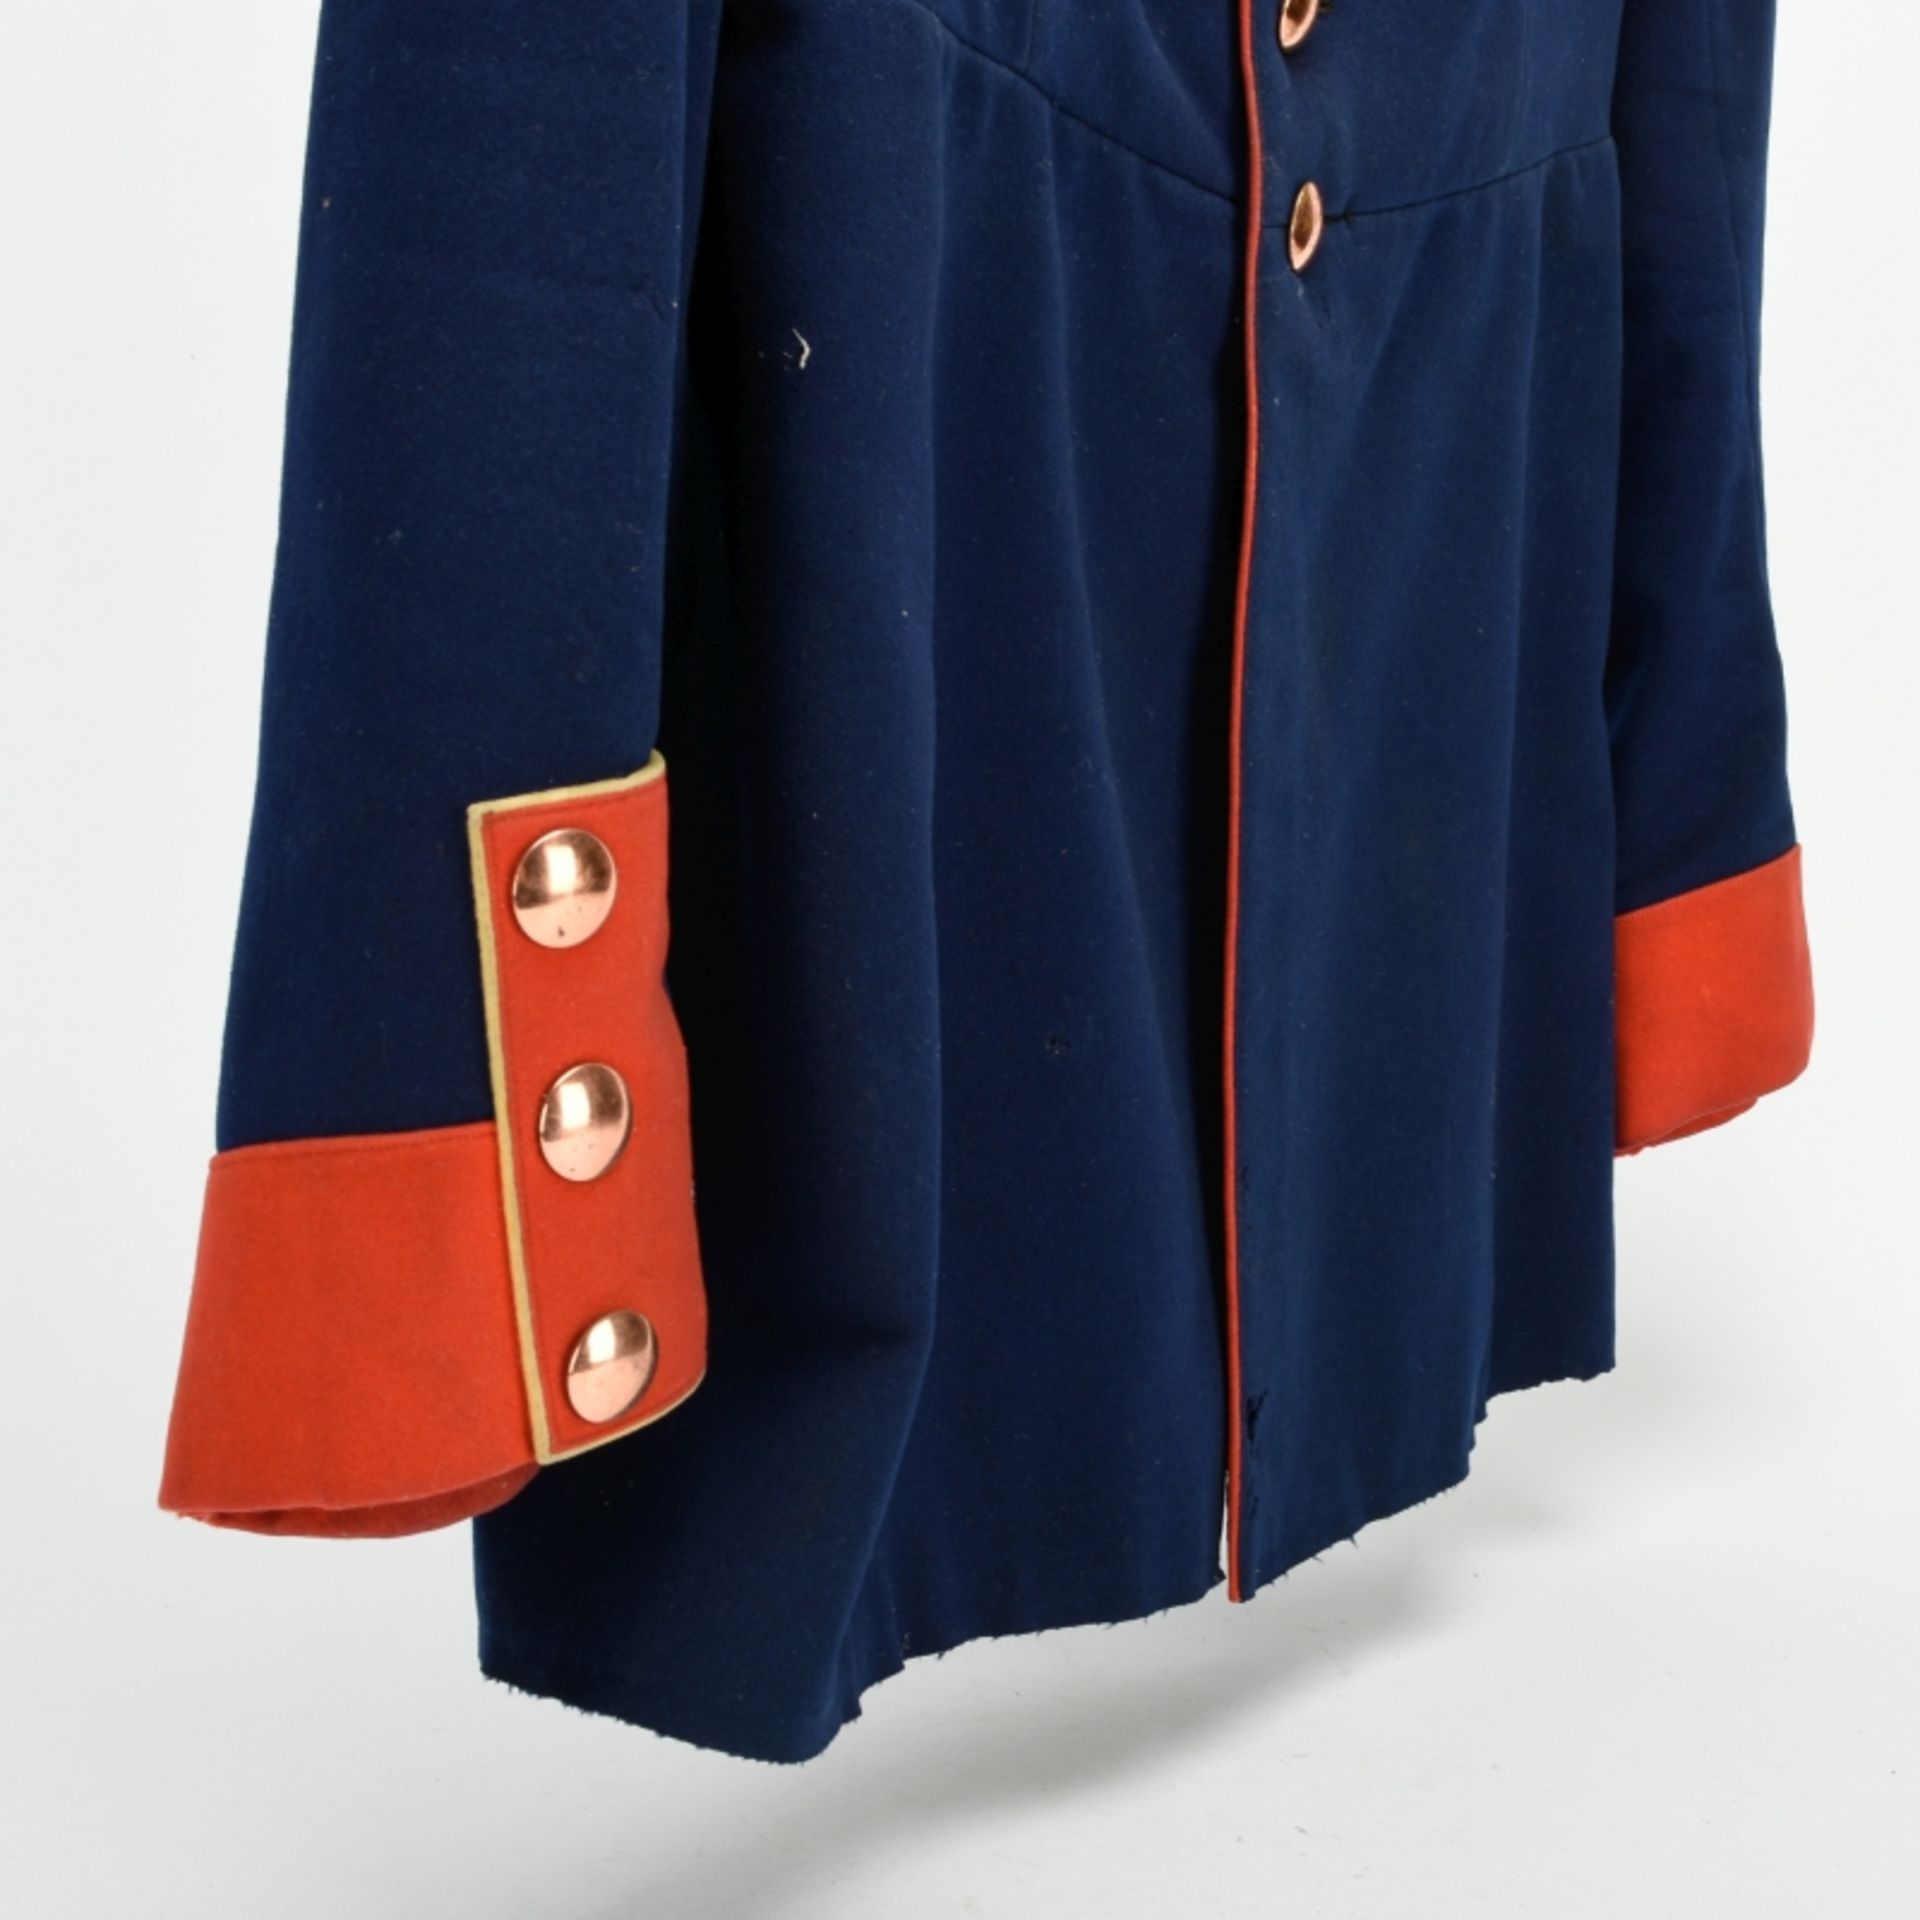 Uniformjacke Preußen - Bild 3 aus 6